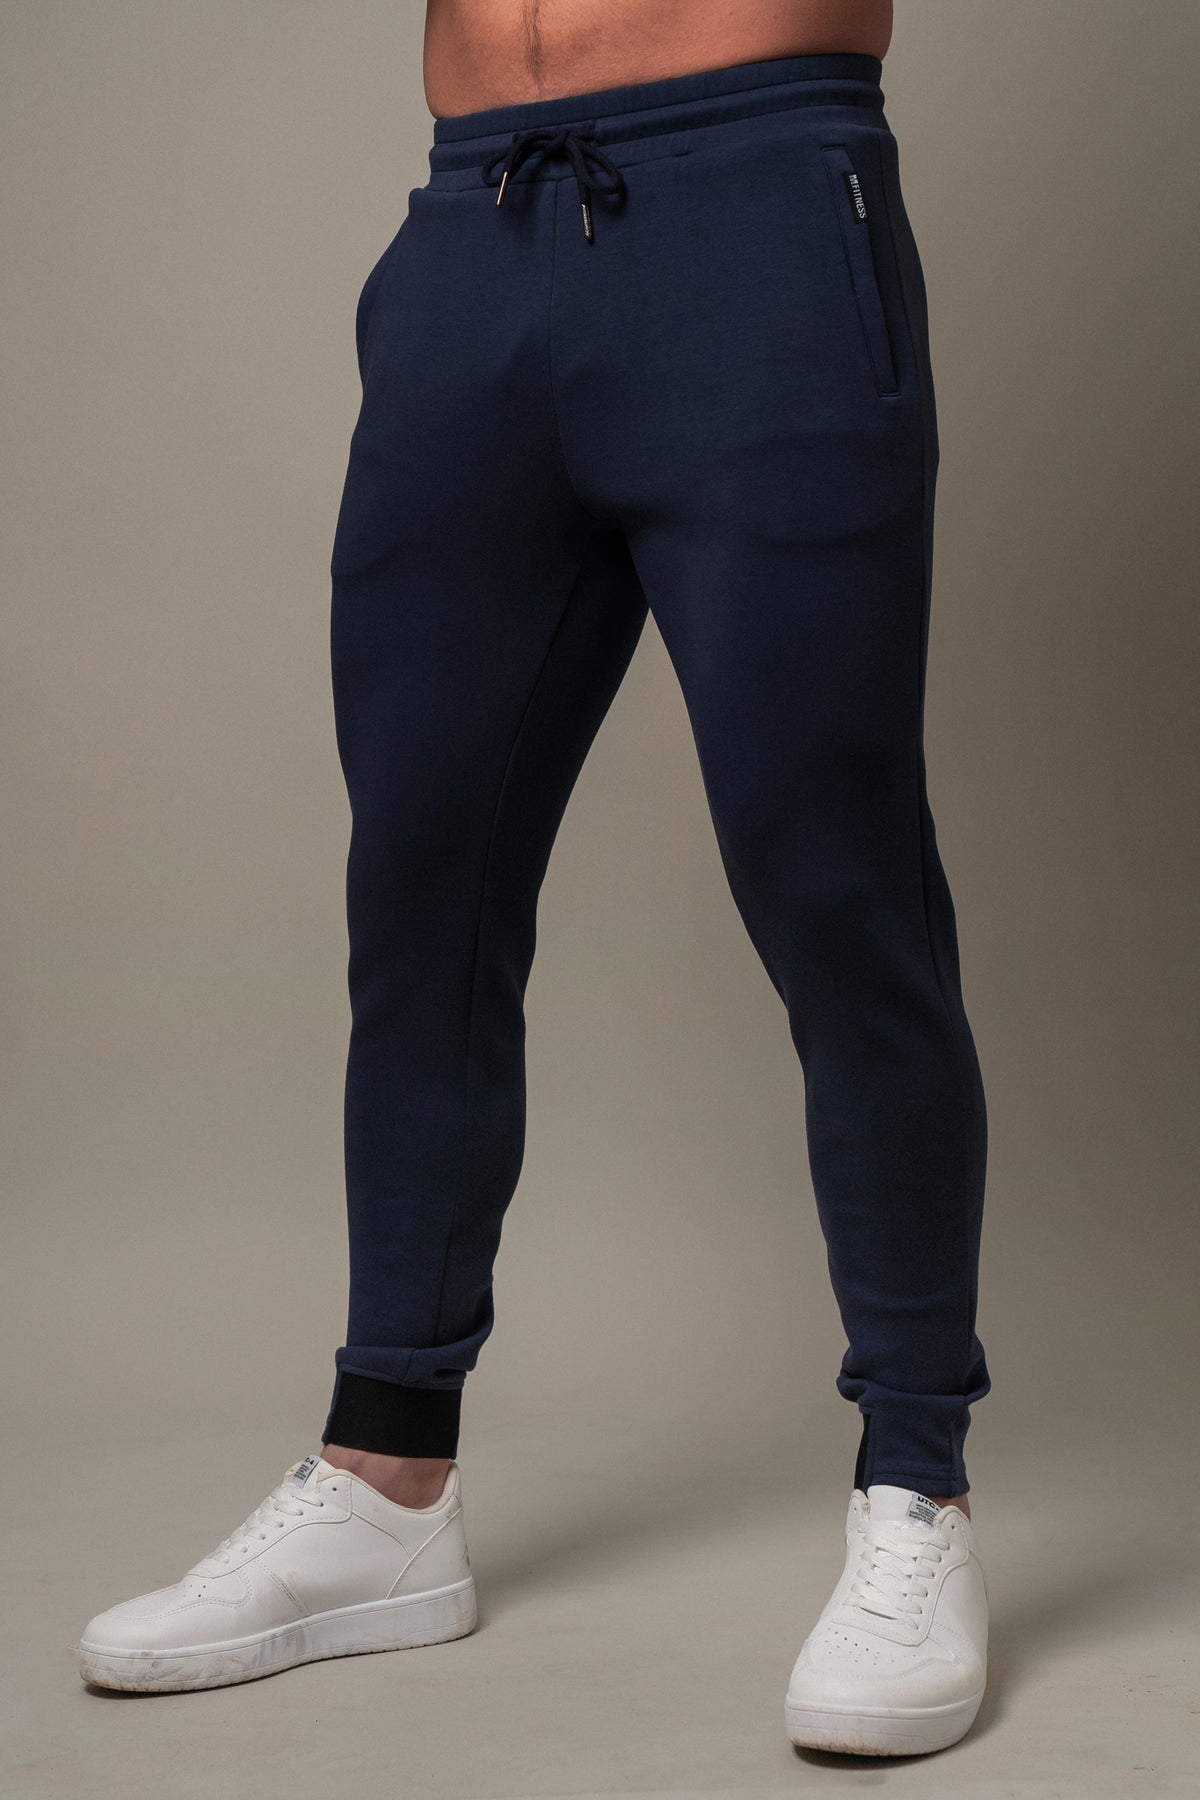 Ash blue pants